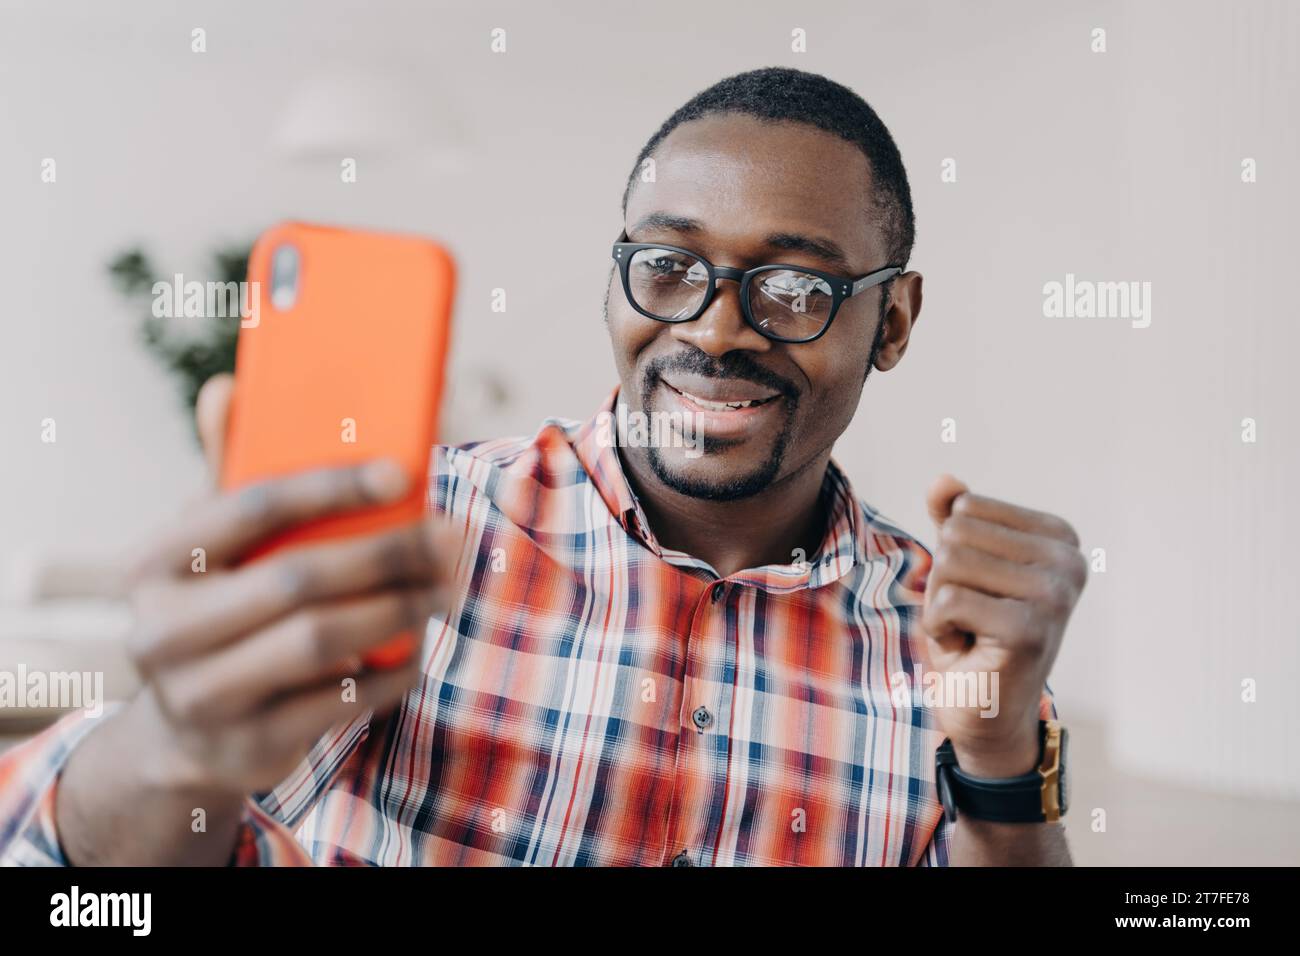 L'uomo con gli occhiali condivide con entusiasmo i contenuti sul suo smartphone, celebrando il successo Foto Stock